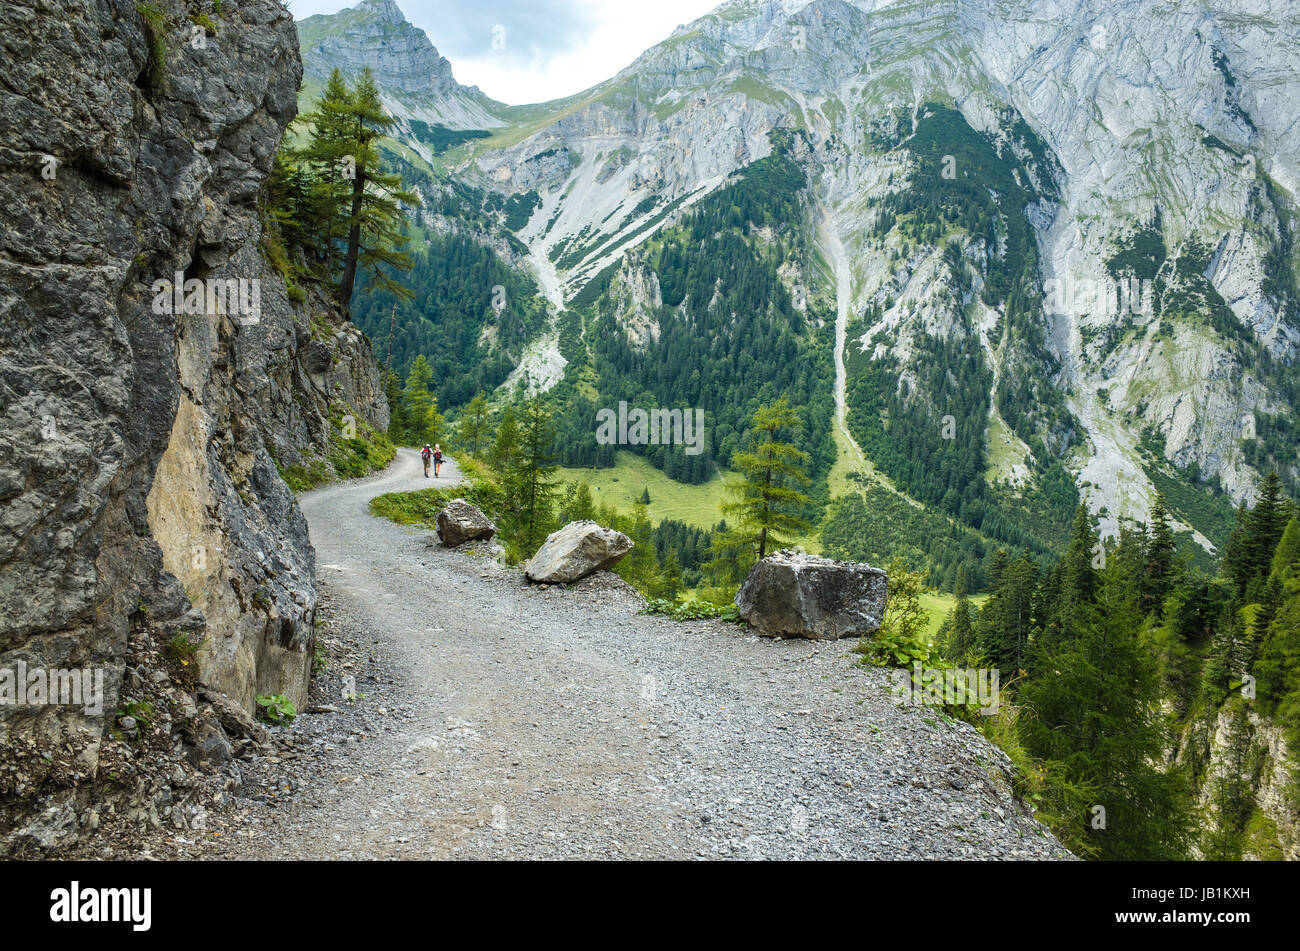 Chemin de randonnée dans la région de Turracher Karwendel, Autriche Banque D'Images